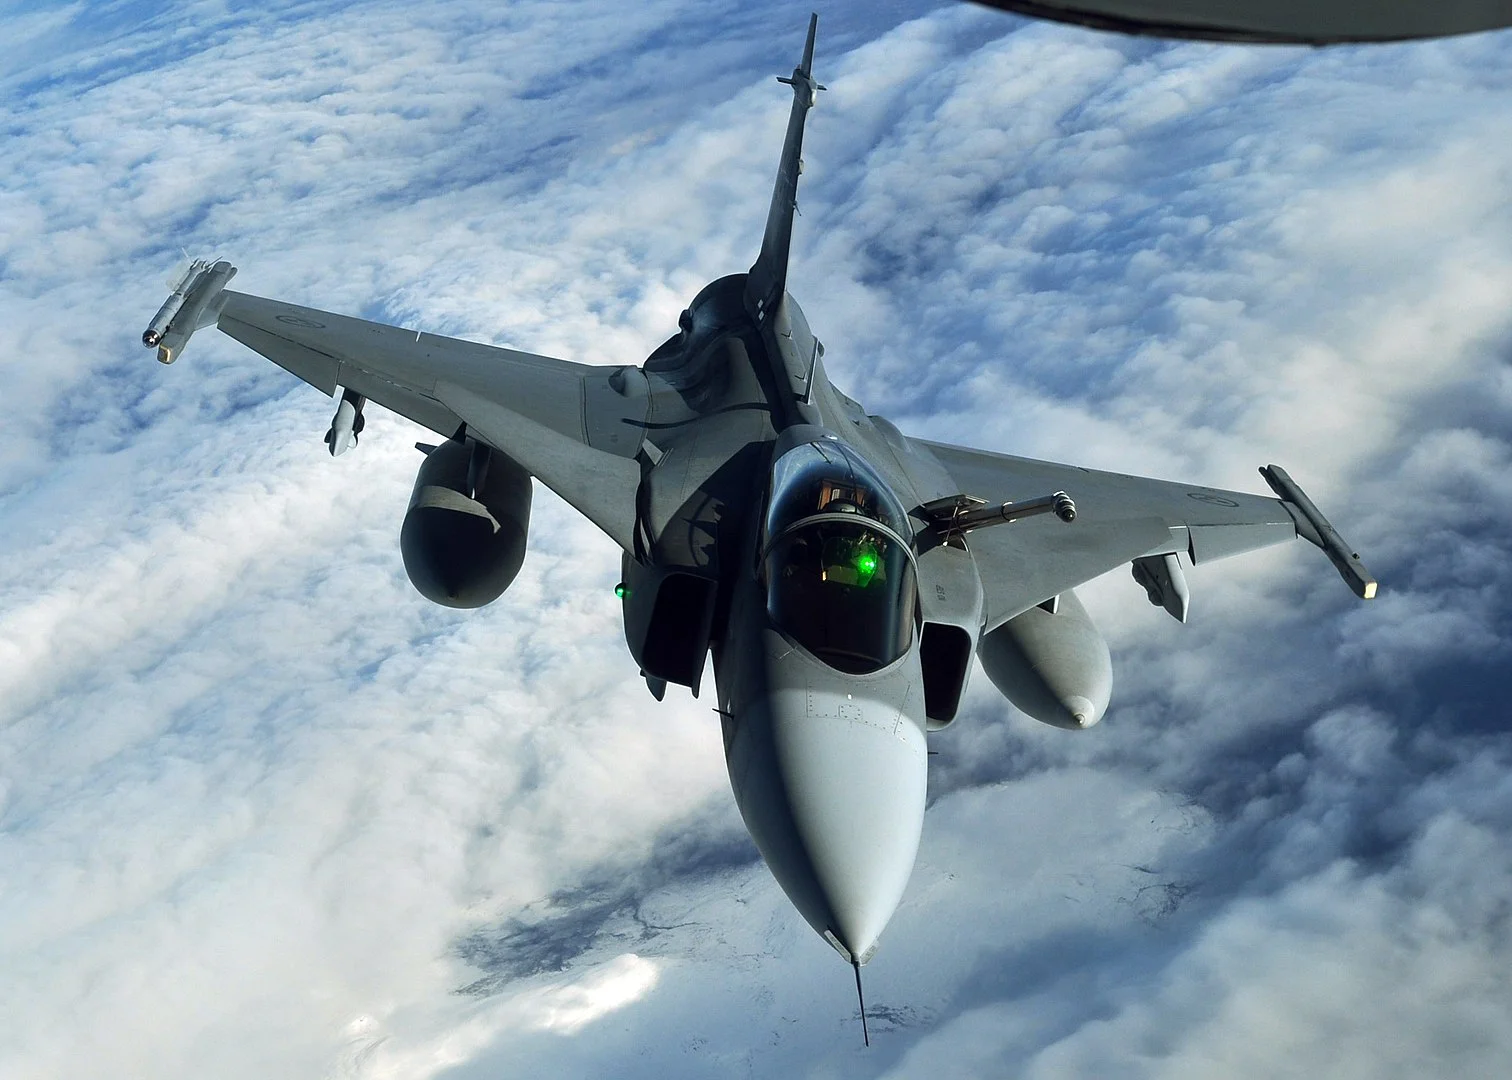 Άσκηση “ Falcon Strike”: Πως τα κινεζικά J-11 ηττήθηκαν  κατά κράτος από τα Gripen της Ταϋλάνδης σε εμπλοκές BVR